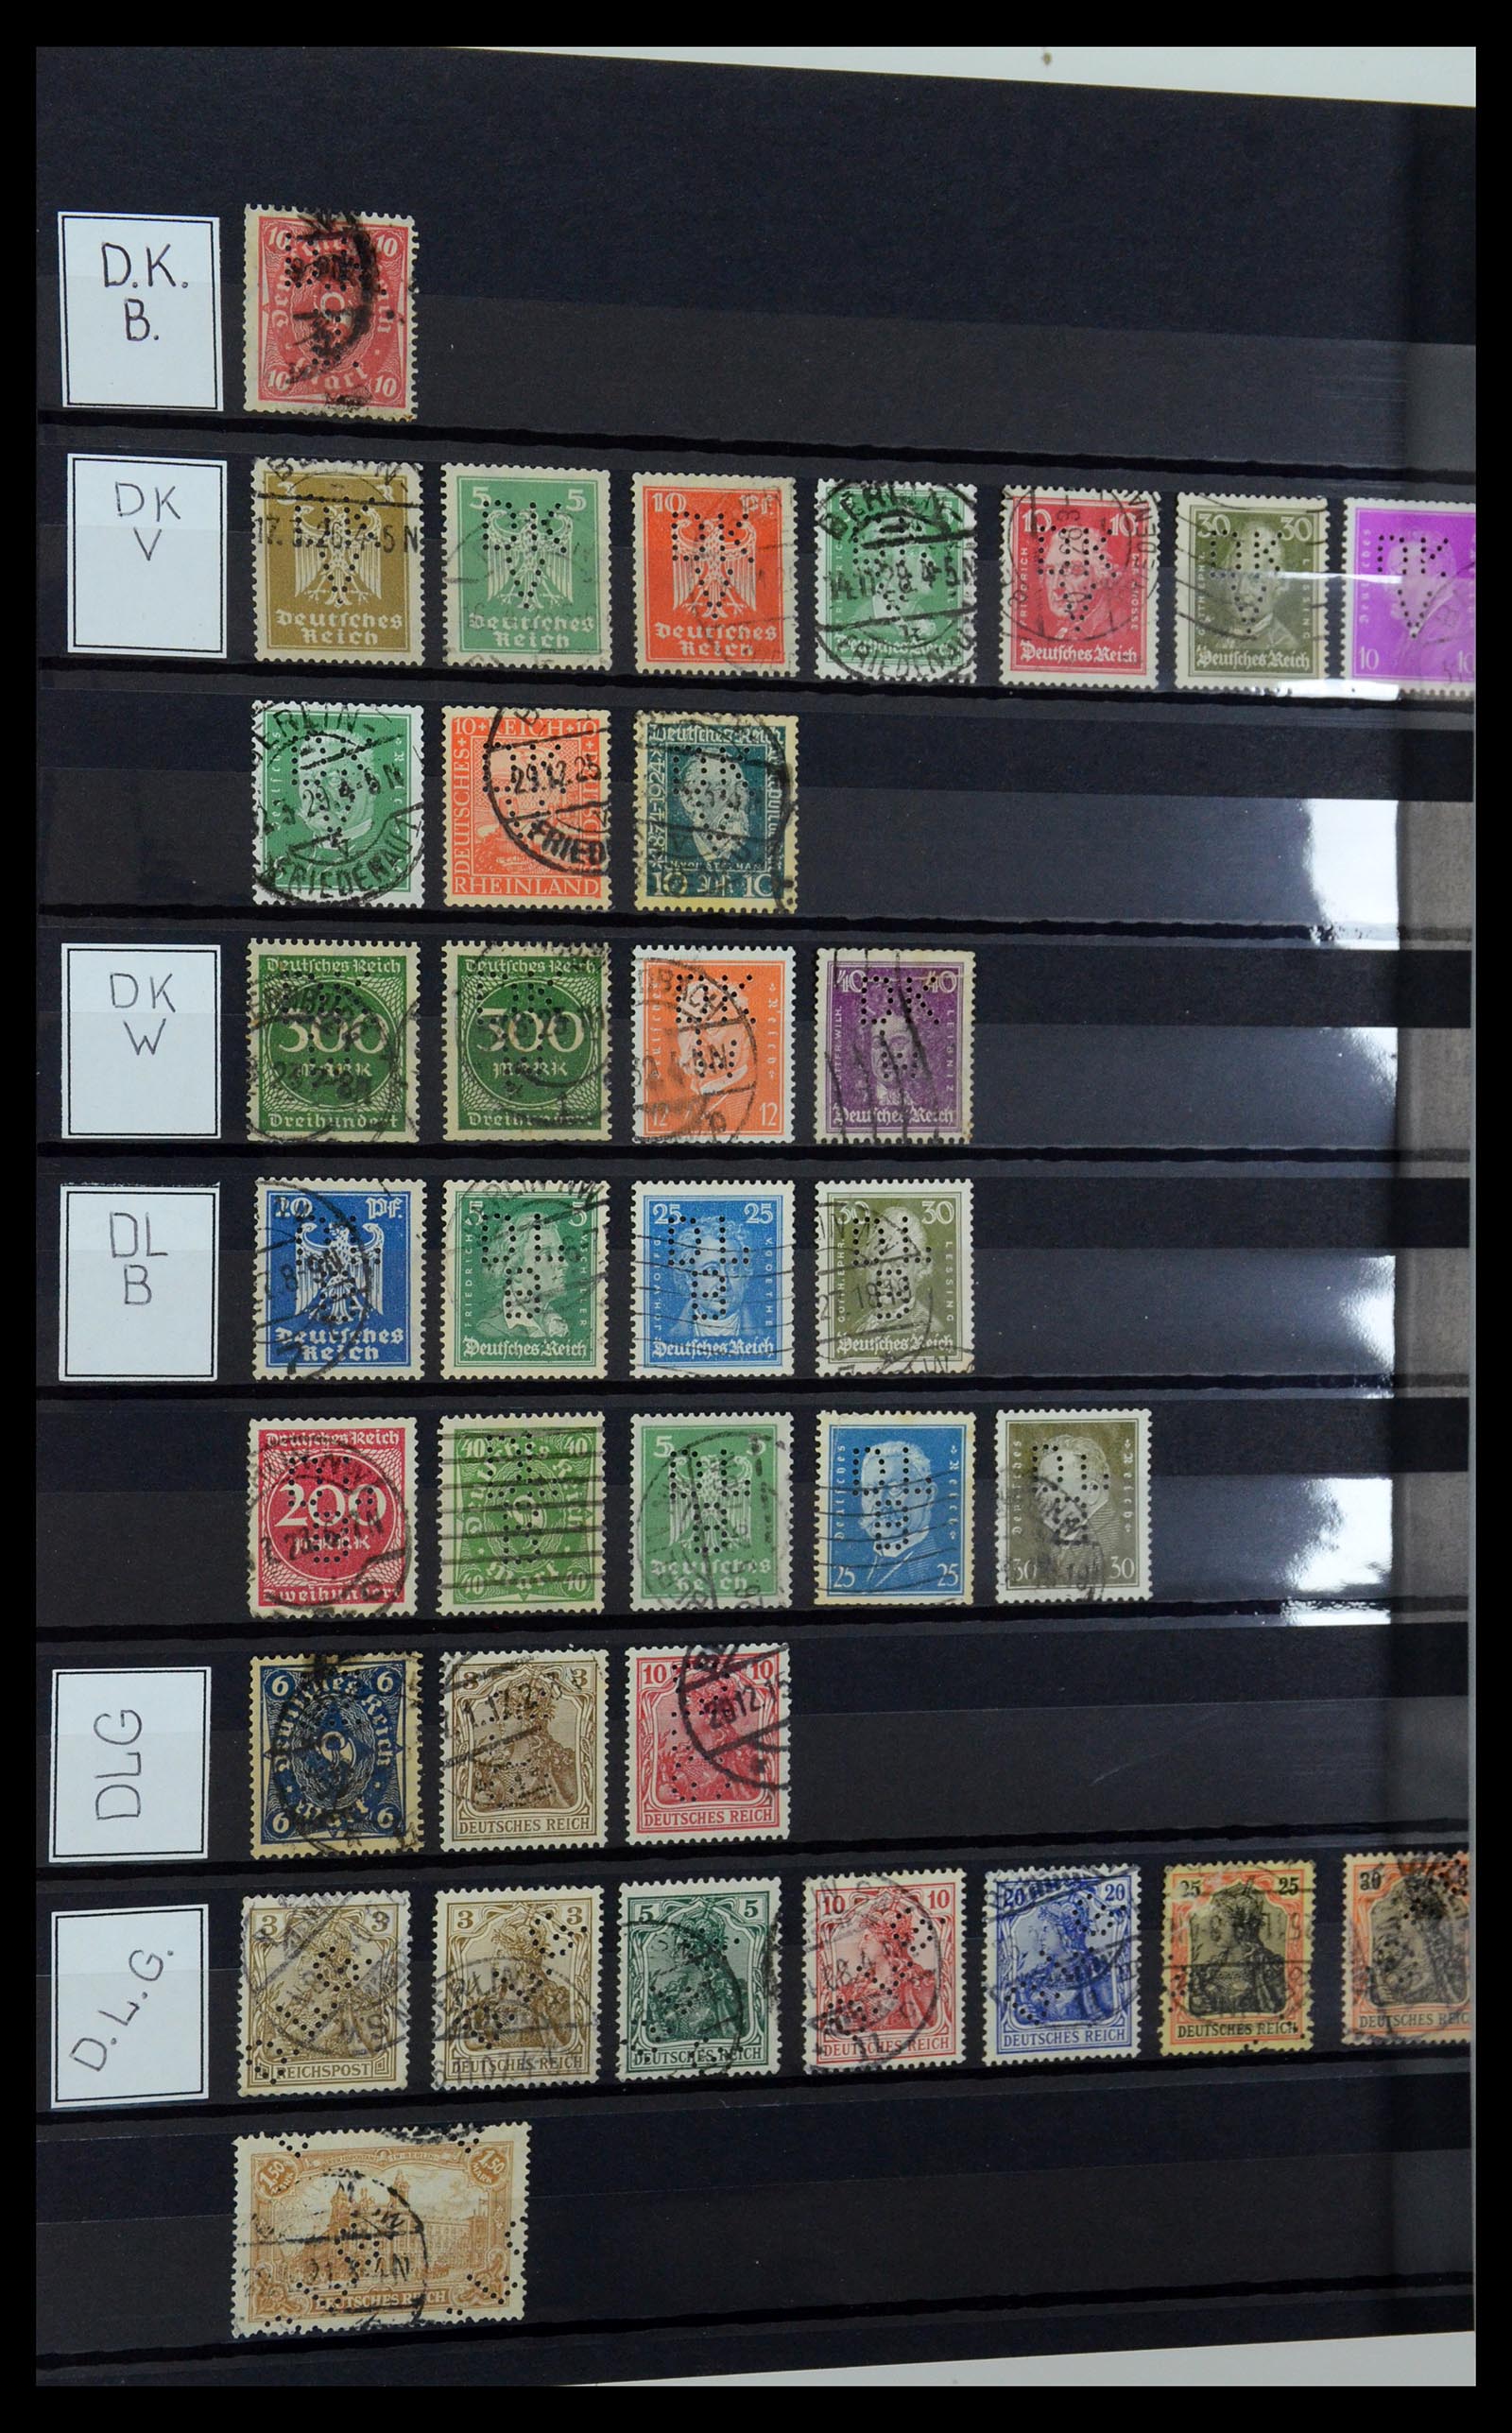 36405 098 - Stamp collection 36405 German Reich perfins 1880-1945.